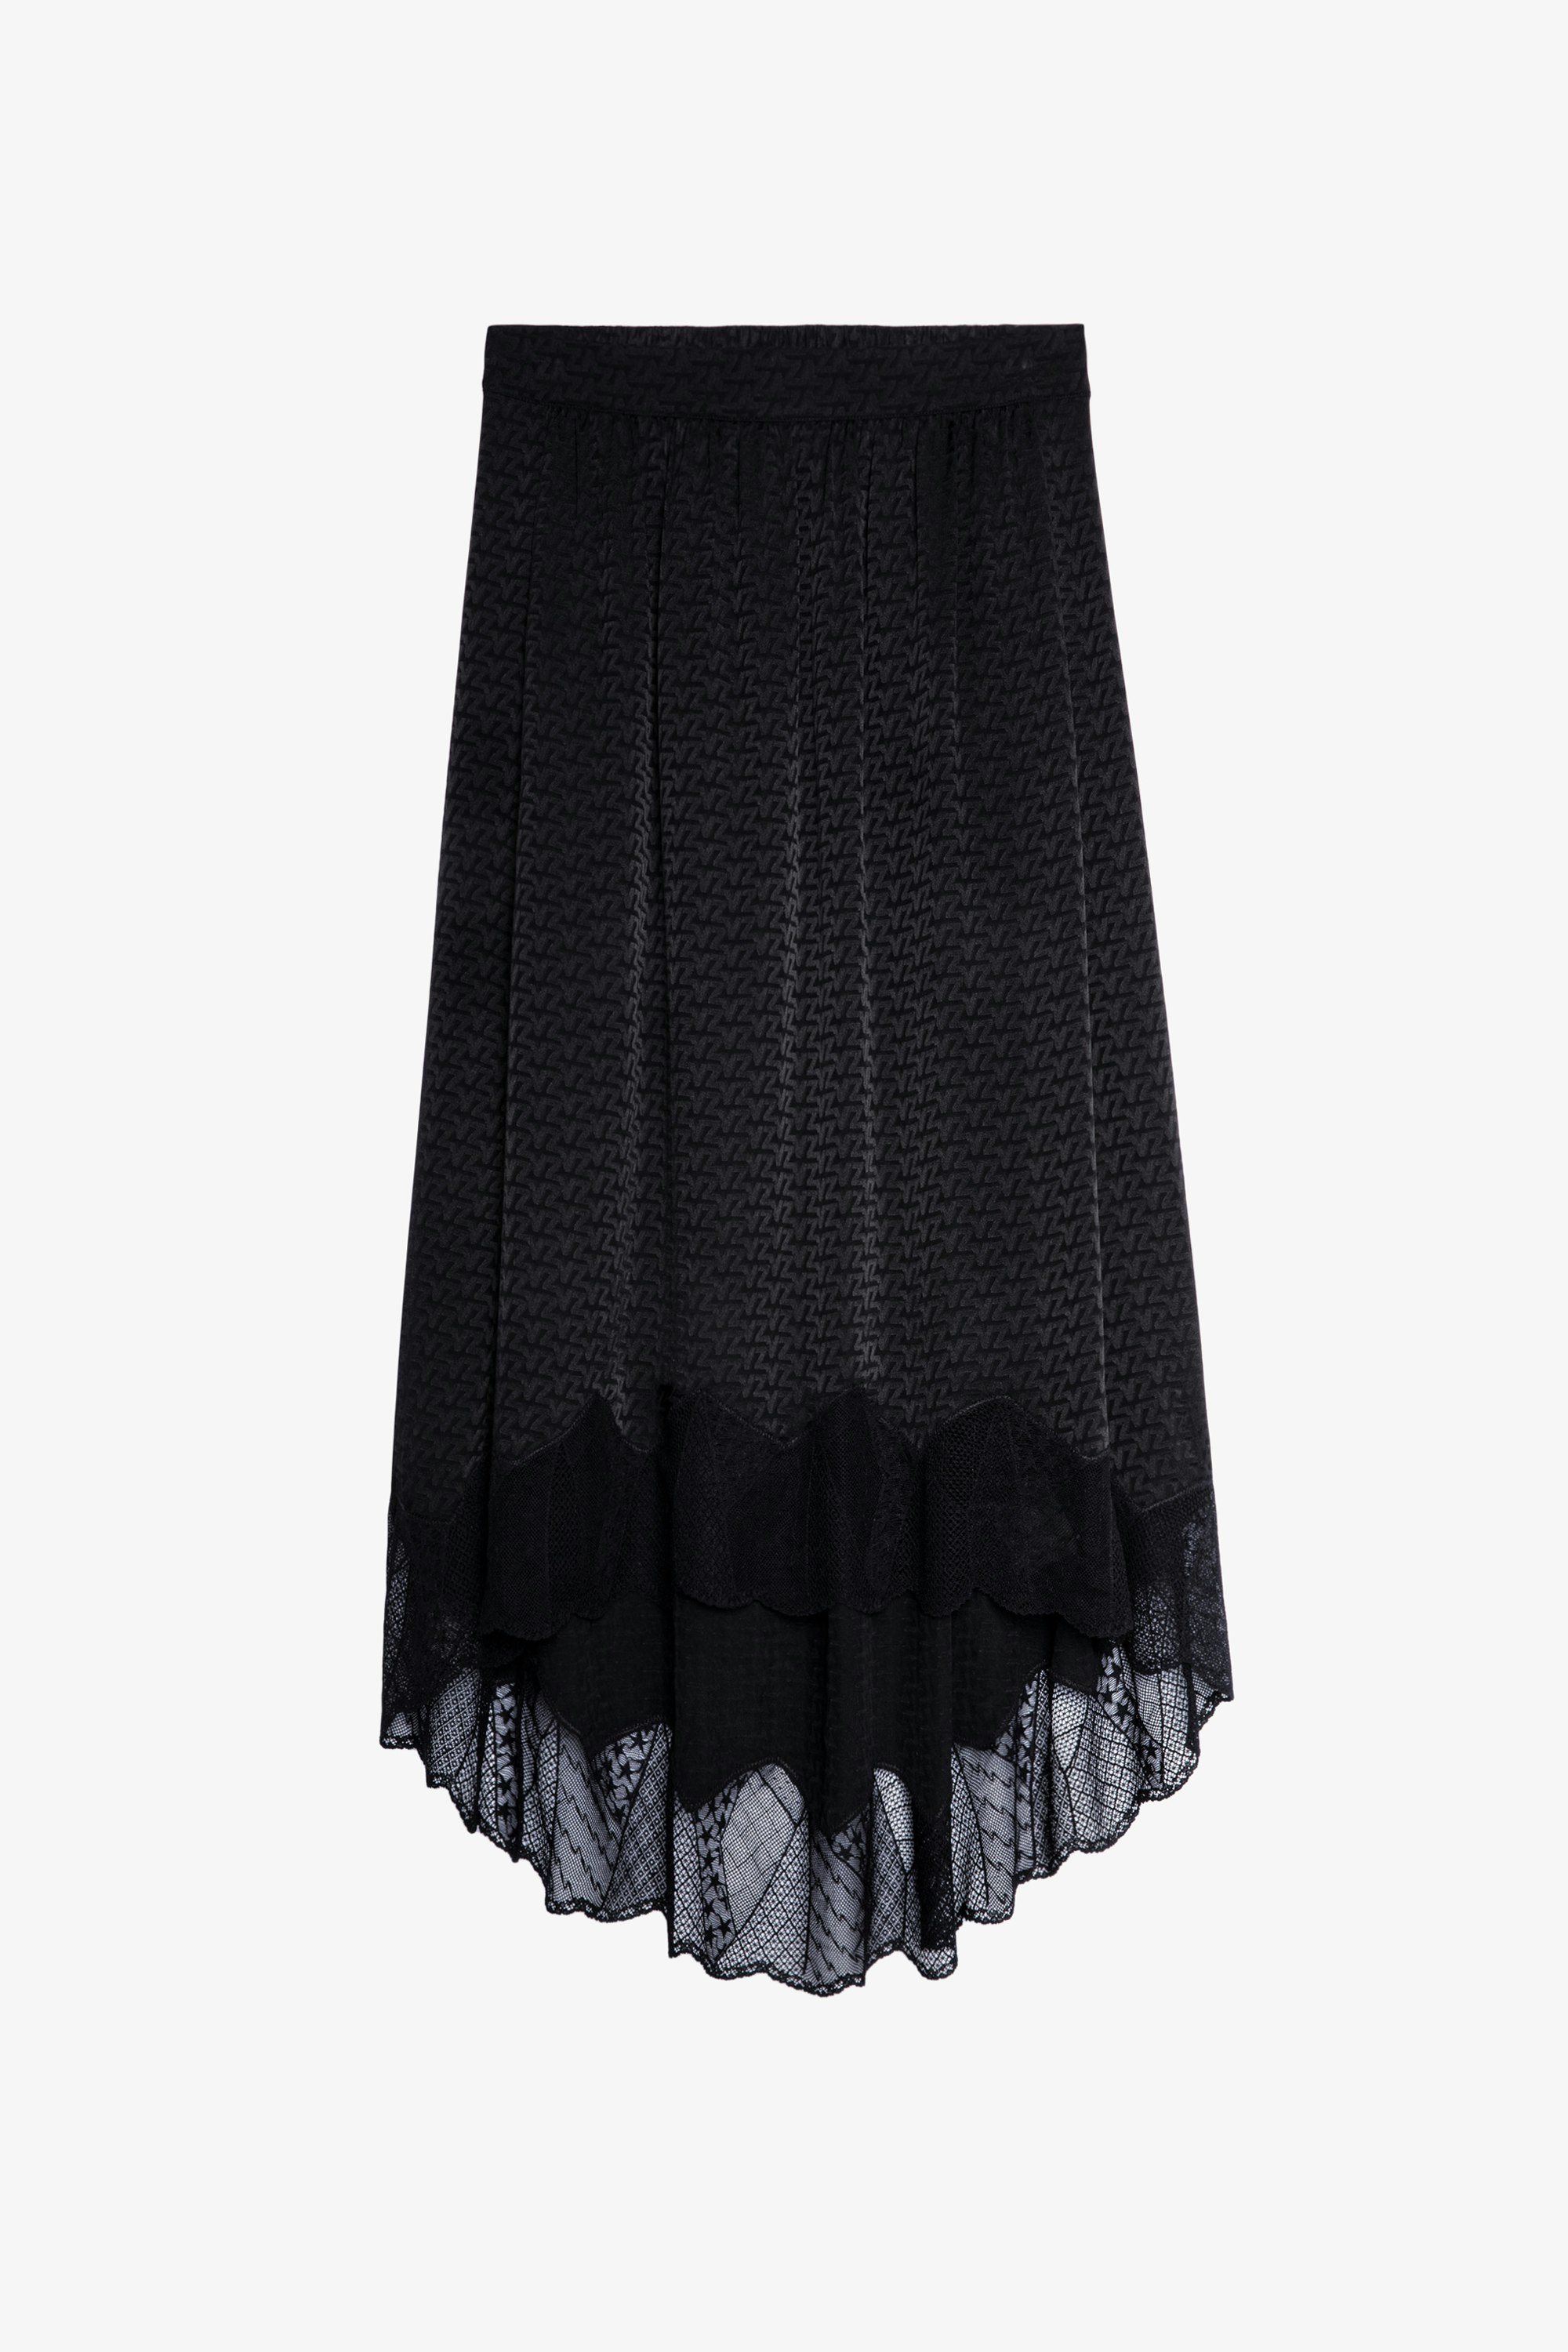 Joslin Jacquard Skirt ZV 3D - Women’s black silk jacquard skirt.